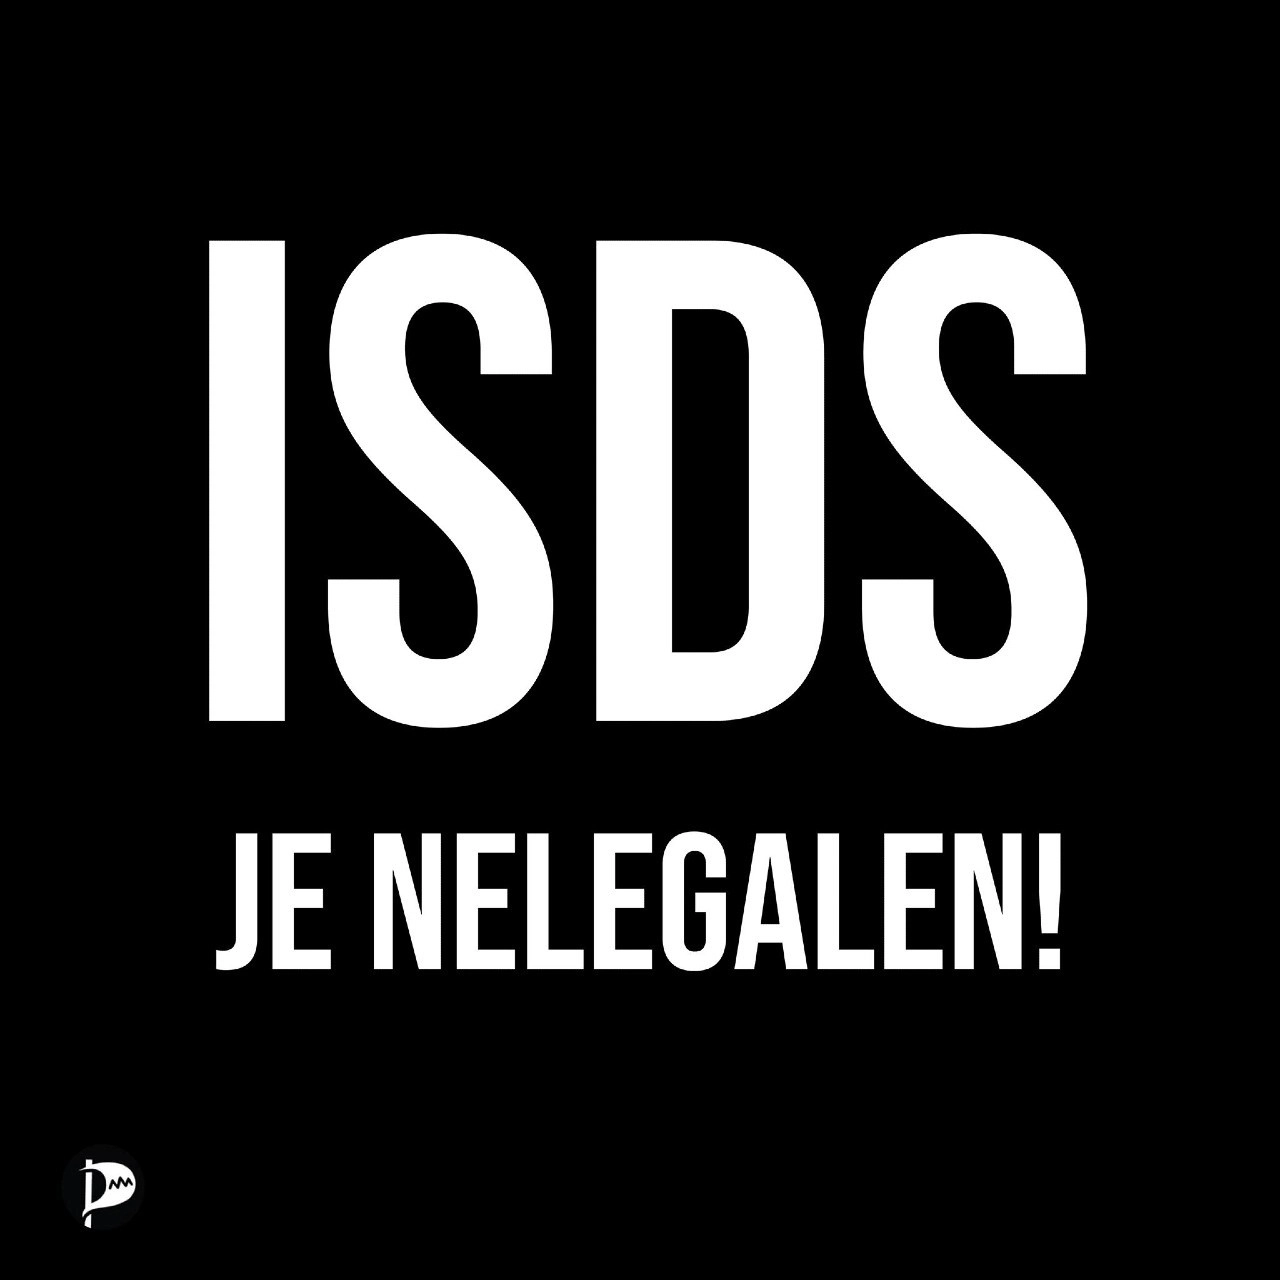 ISDS